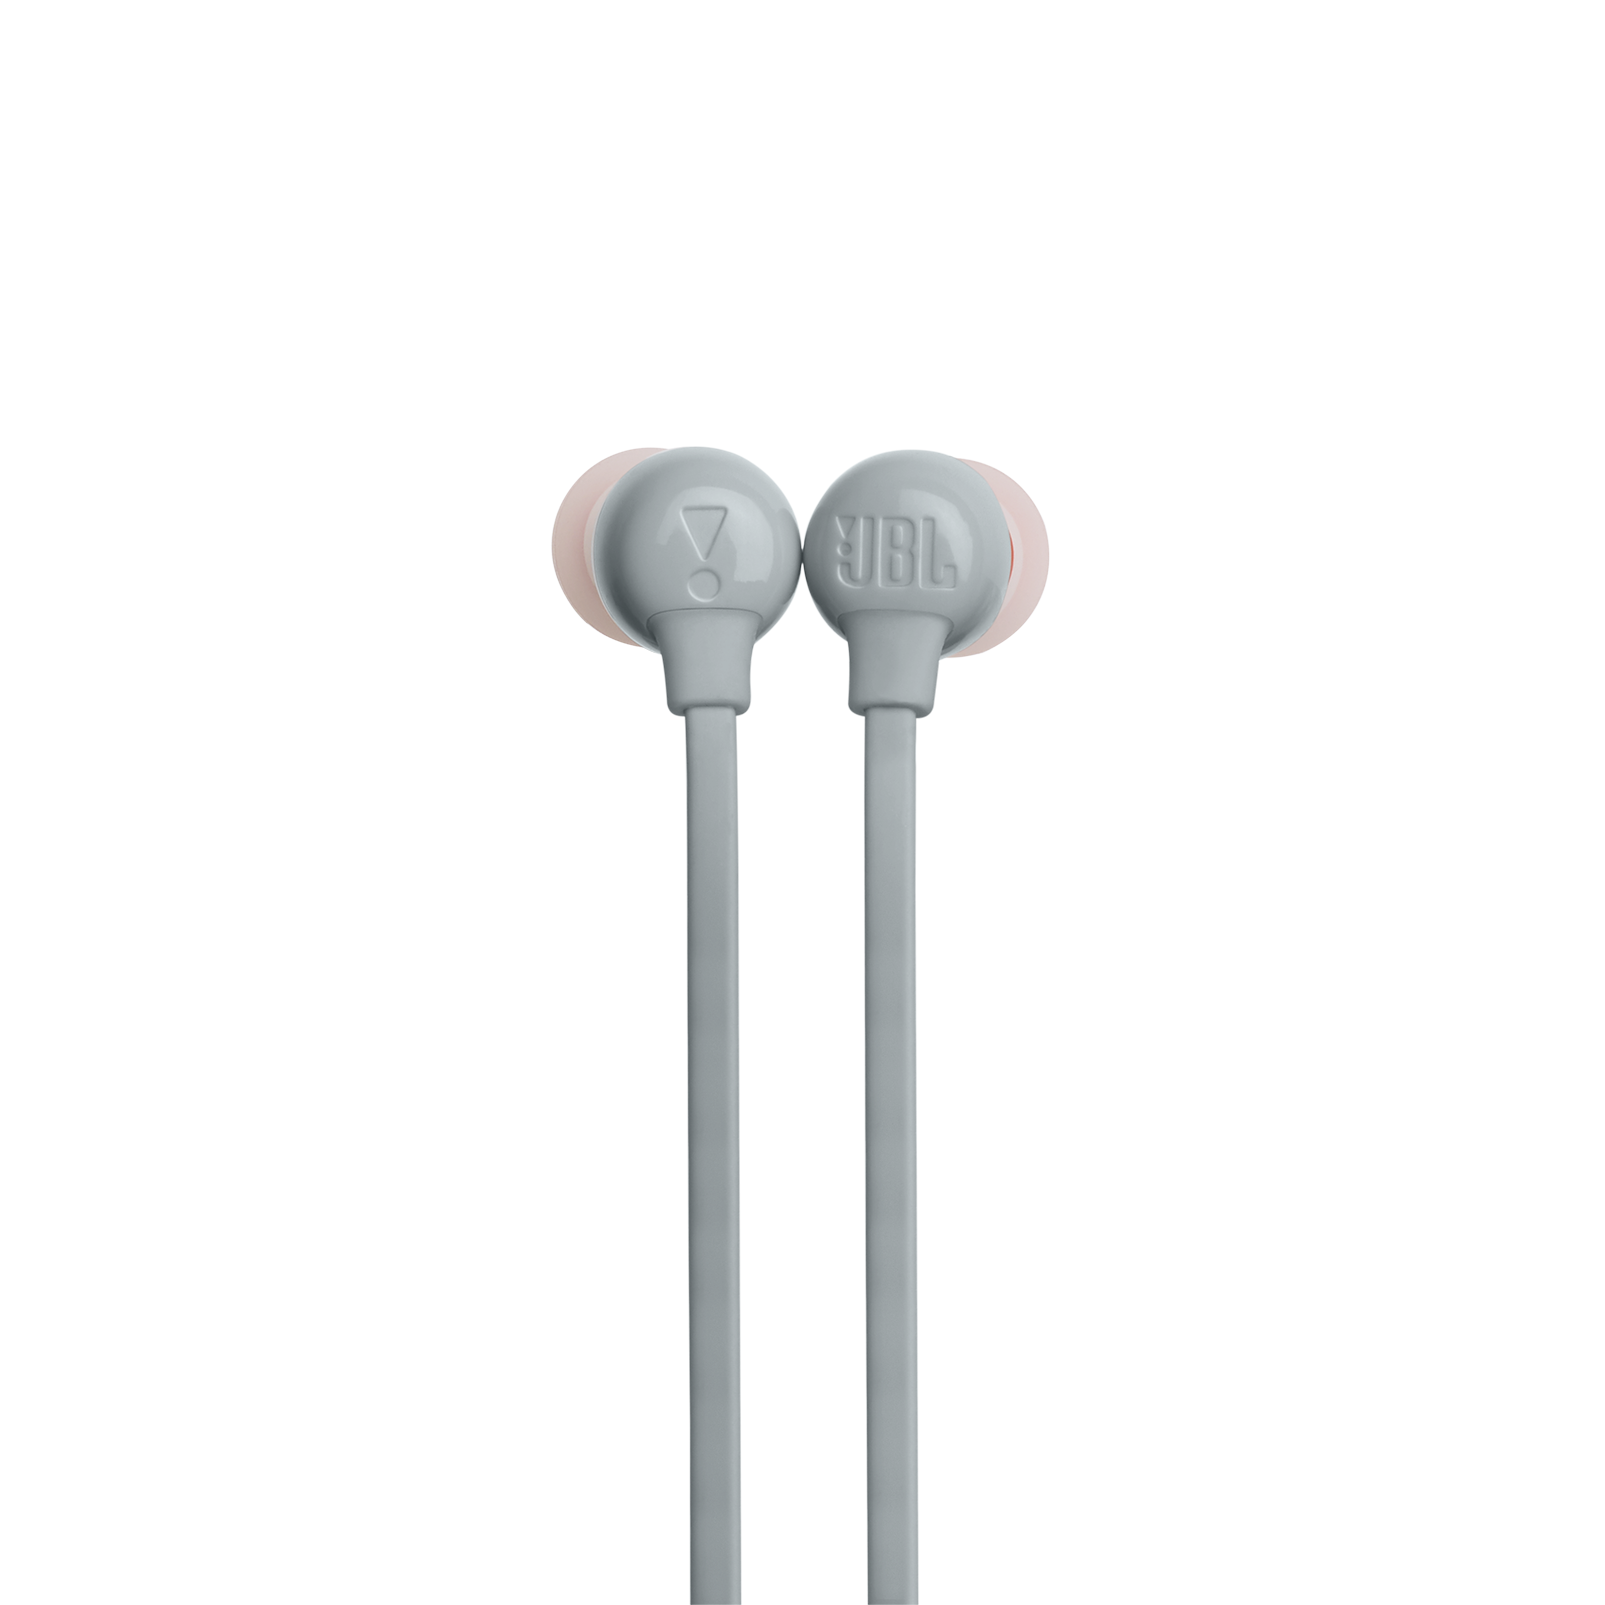 JBL Tune 165BT - Grey - Wireless In-Ear headphones - Detailshot 1